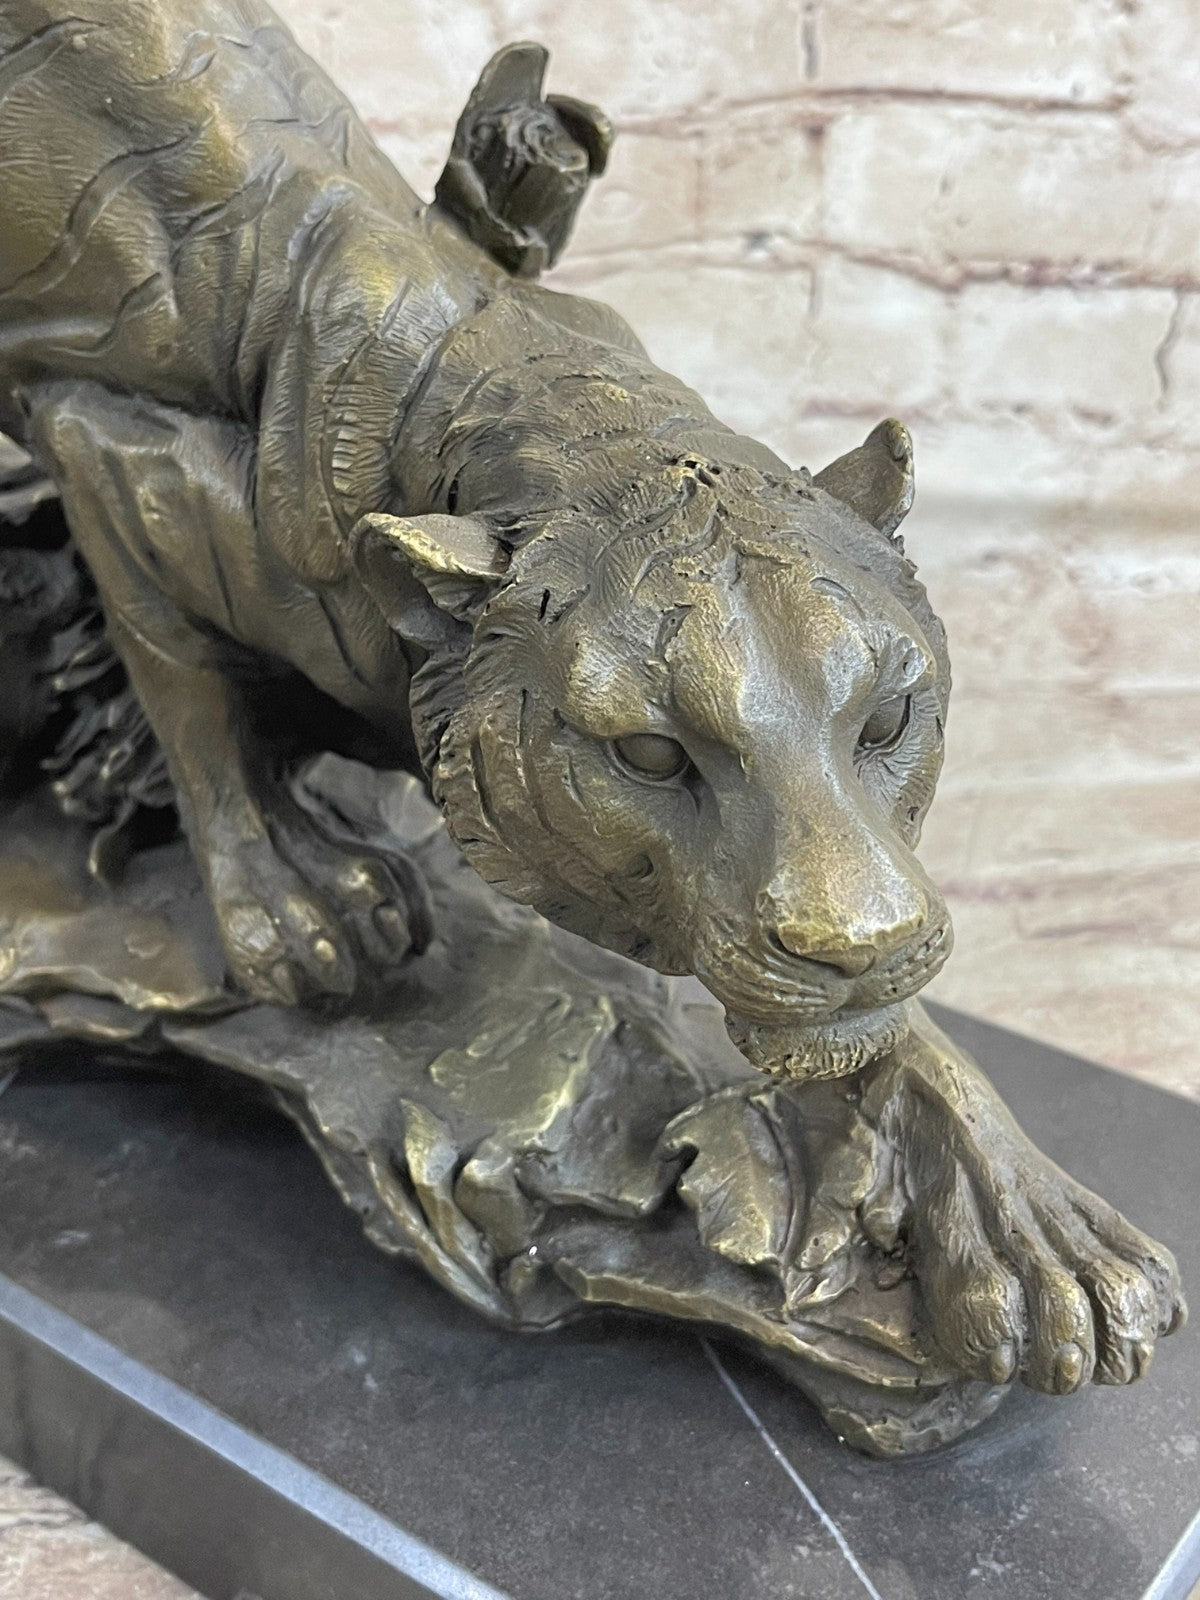 18" classical bronze modern art sculpture beast animal a tiger statue Decorative